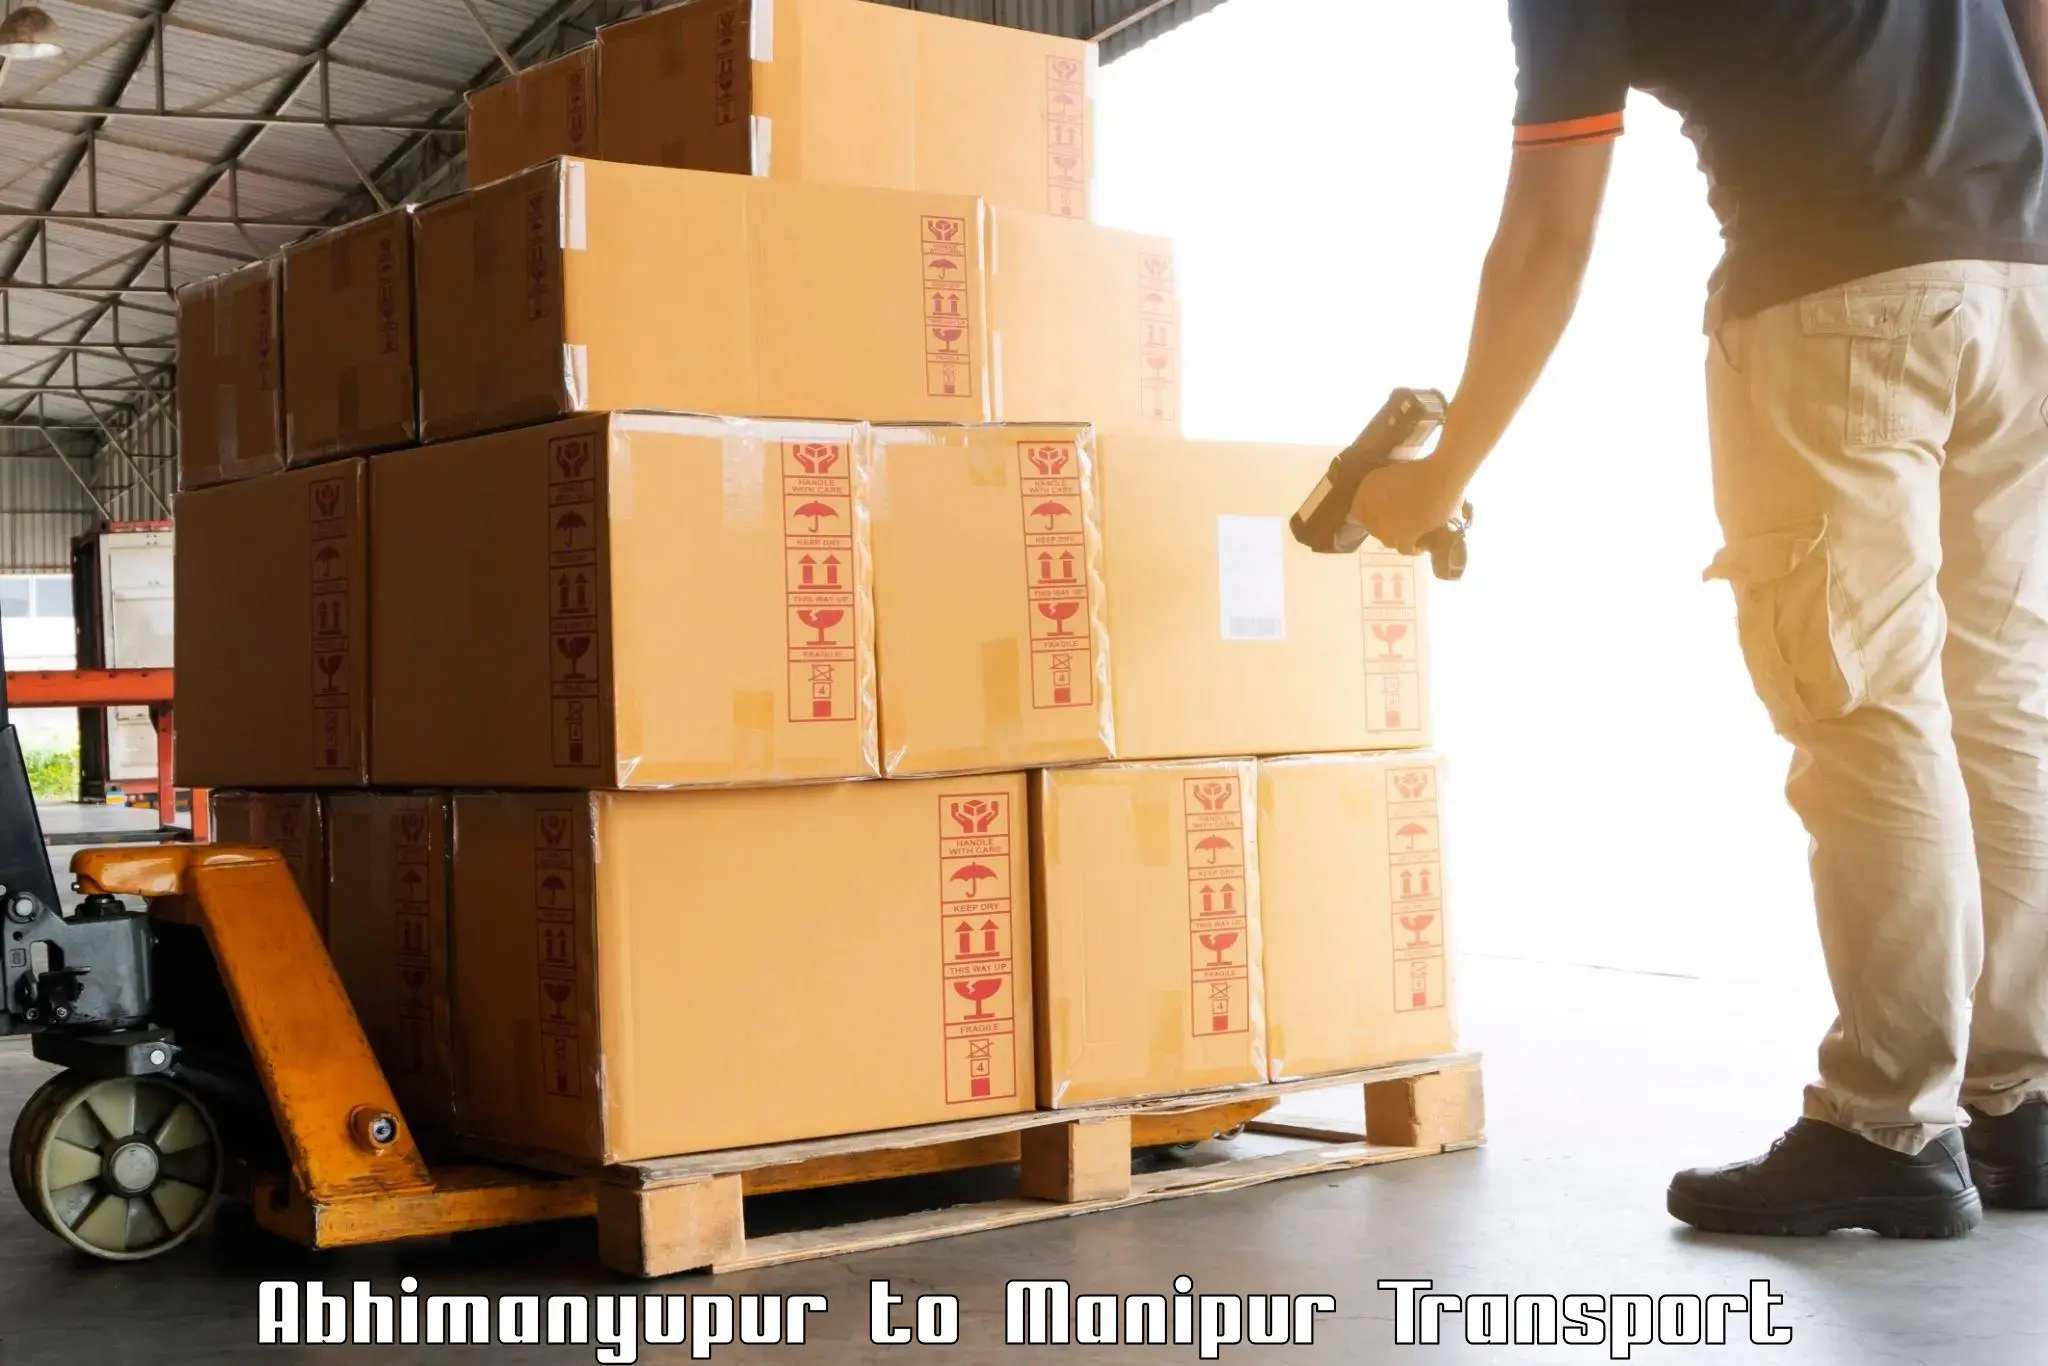 India truck logistics services Abhimanyupur to Senapati